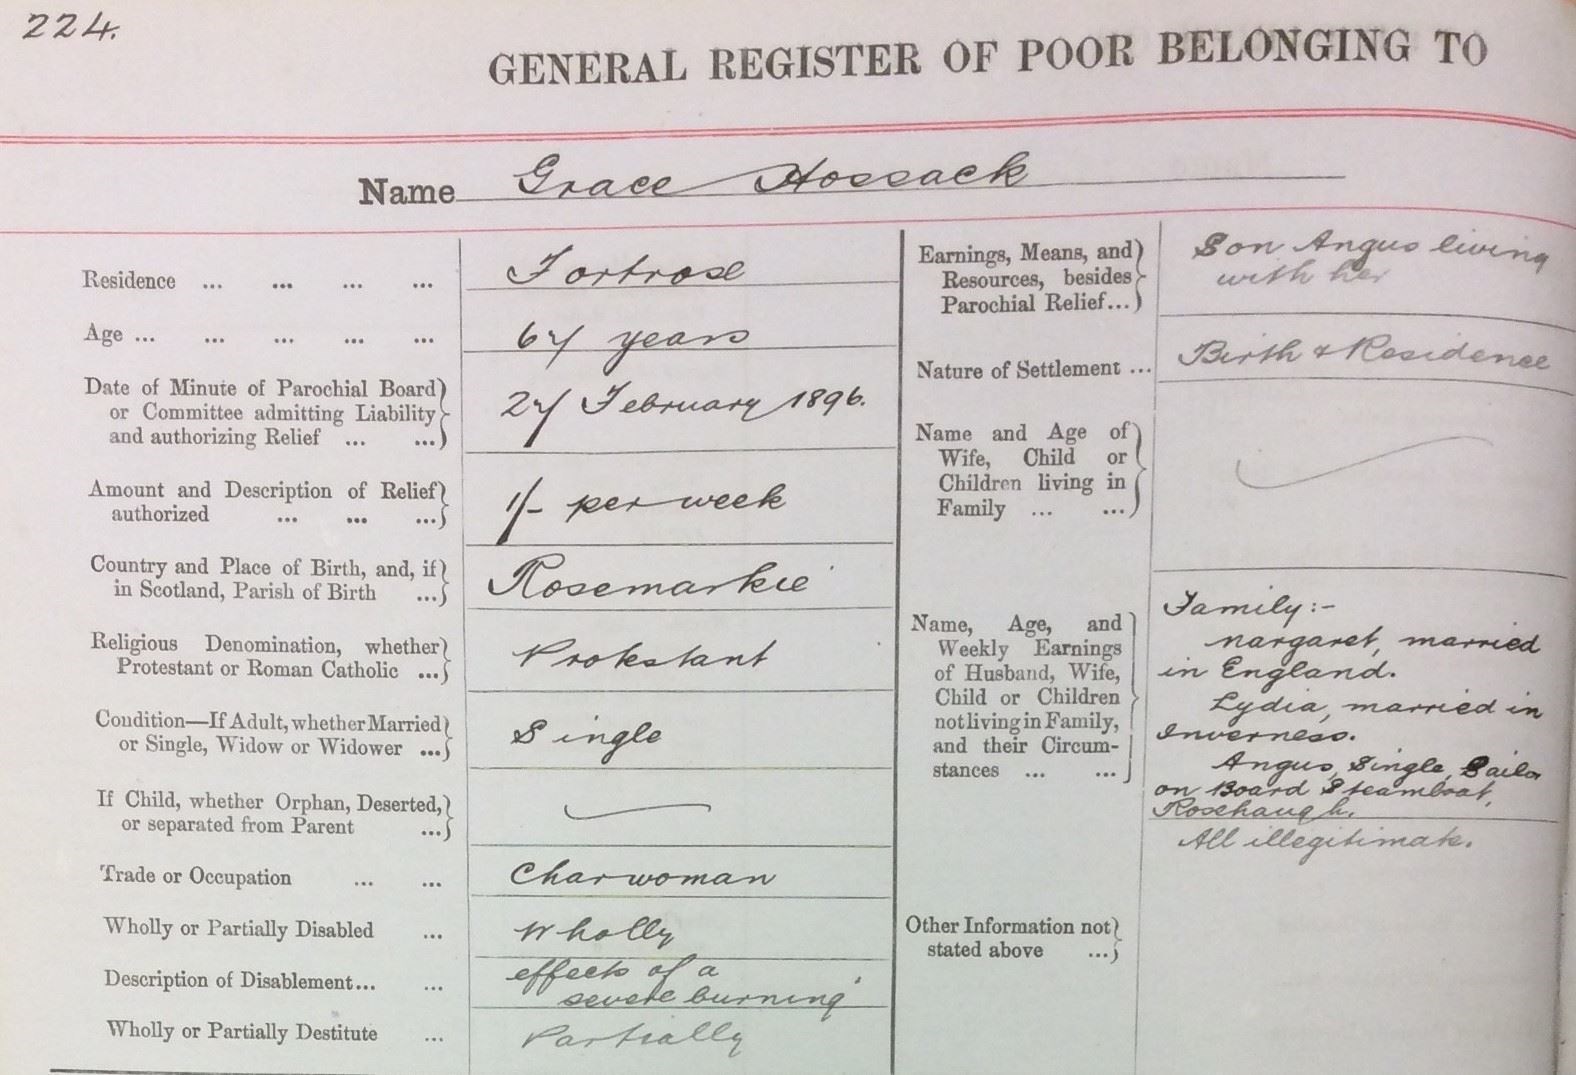 Rosemarkie Parochial Board General Register of Poor, Grace Hossack.